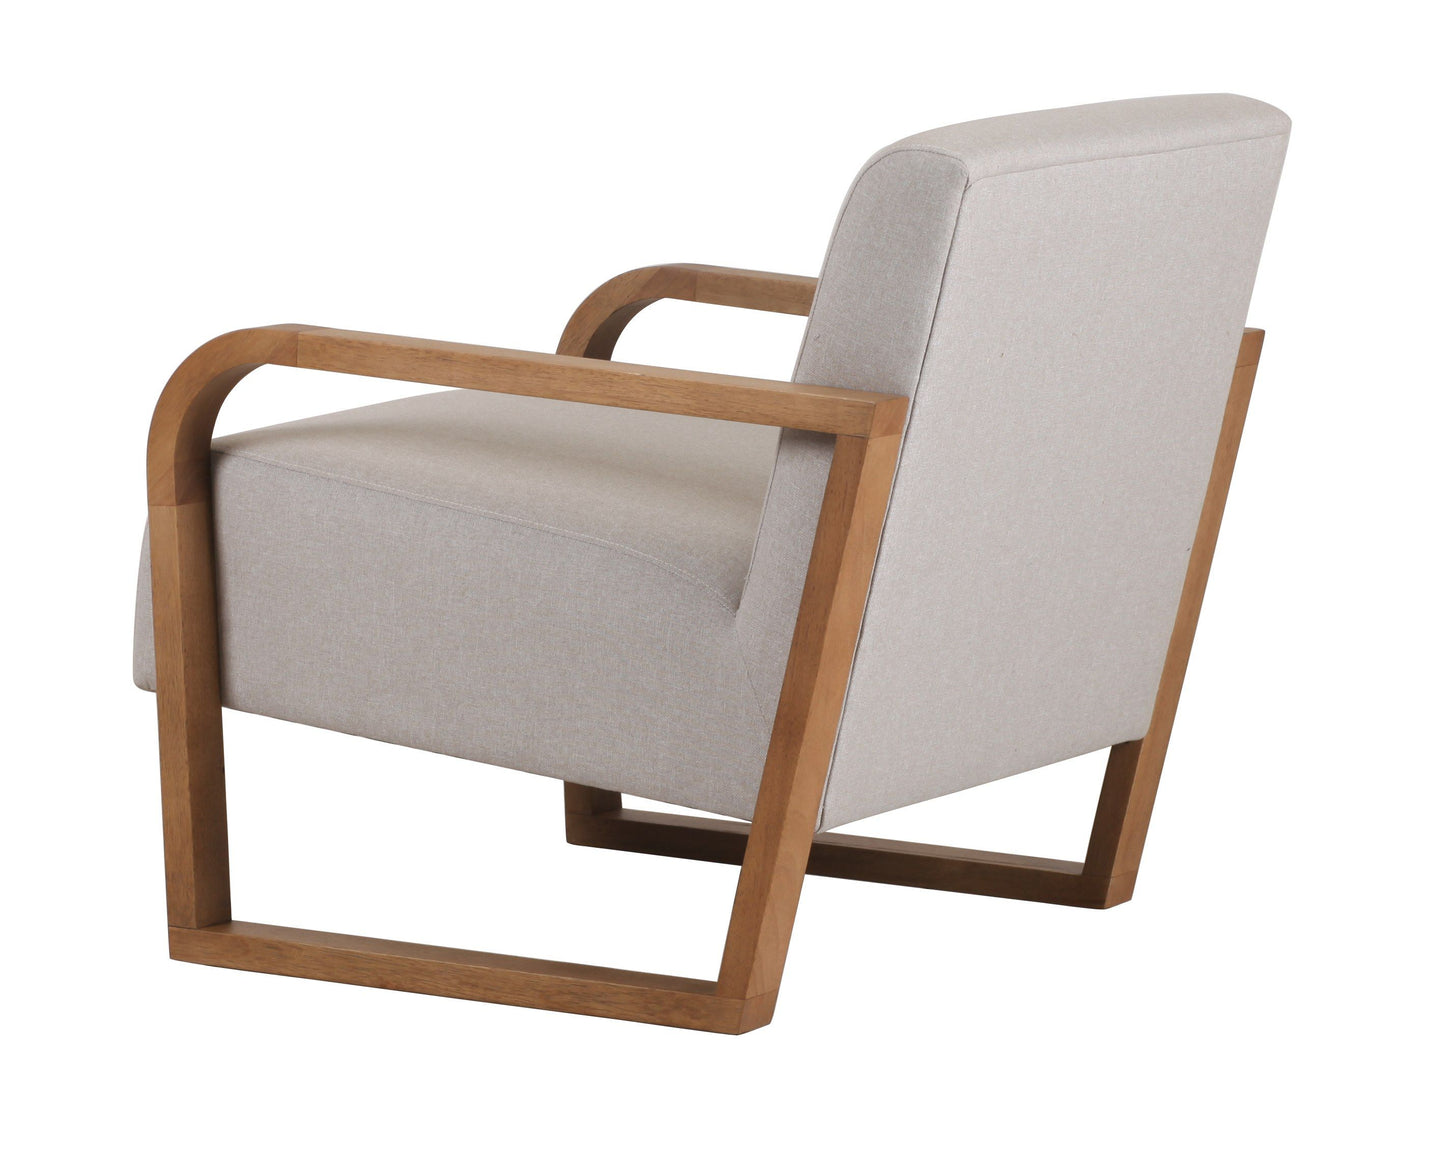 Modrest Sada - Mid-Century Modern Beige Linen + Chestnut Accent Chair